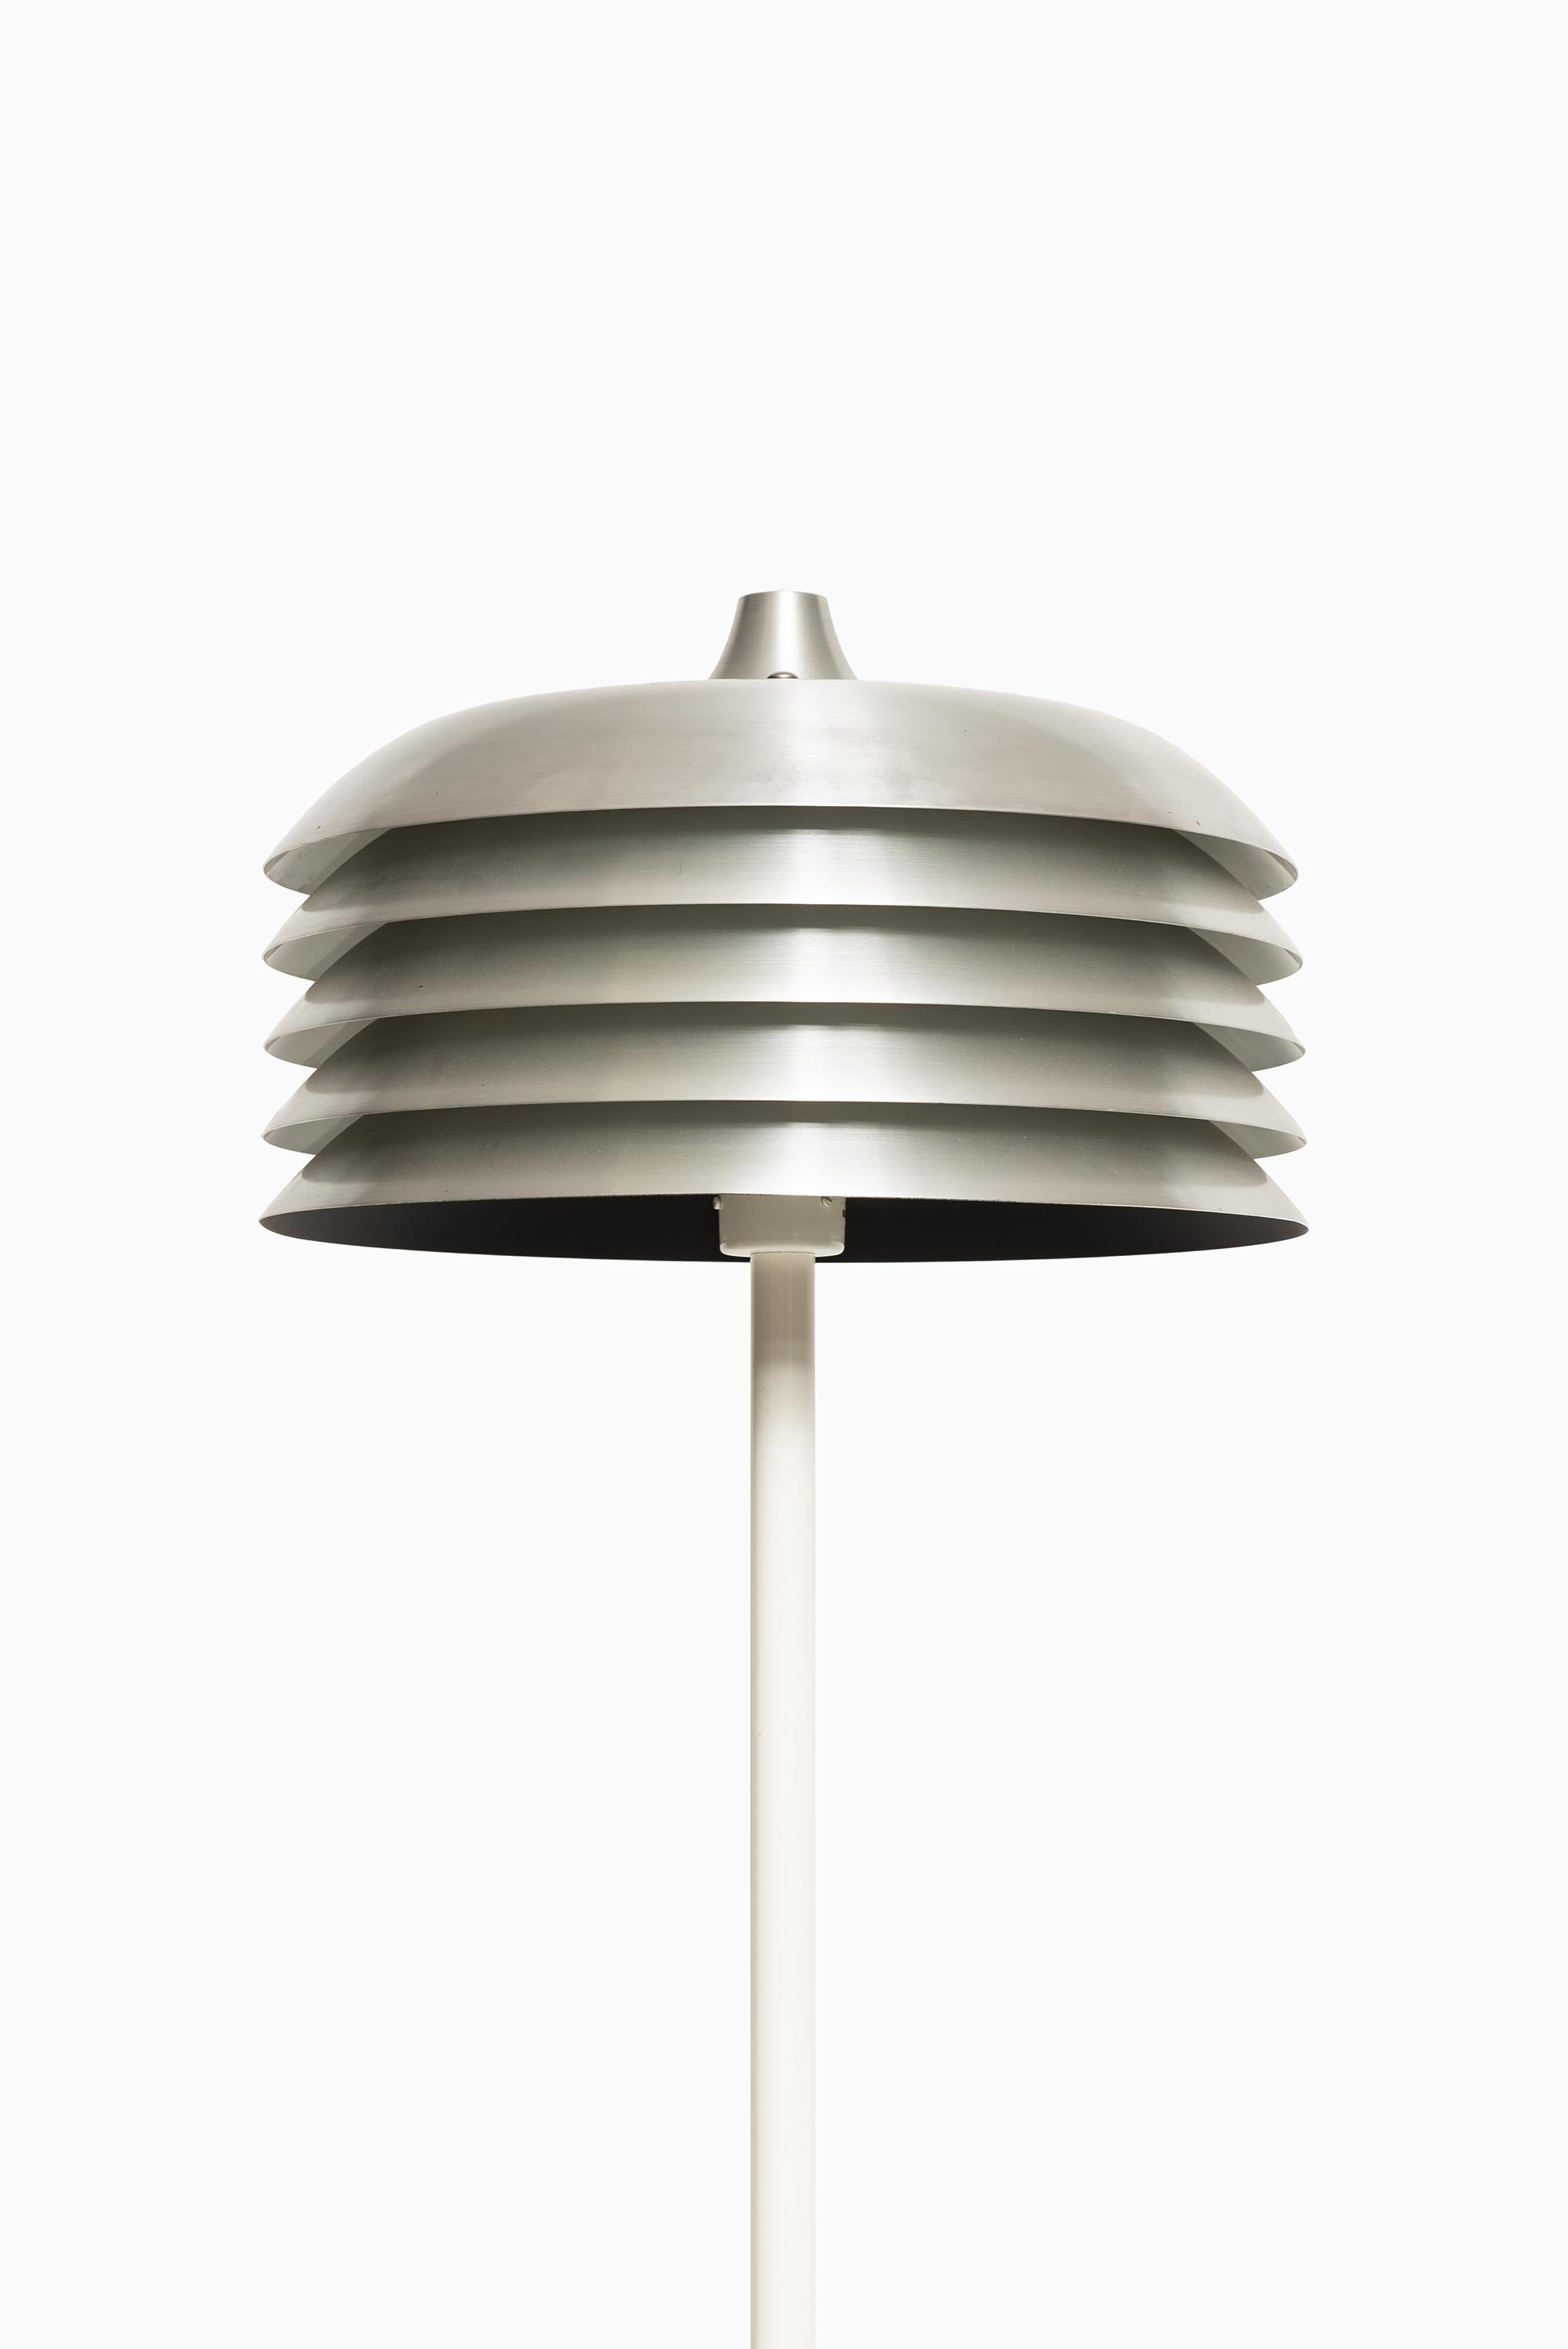 Rare floor lamp model G-178 designed by Hans-Agne Jakobsson. Produced by Hans-Agne Jakobsson AB in Markaryd, Sweden.